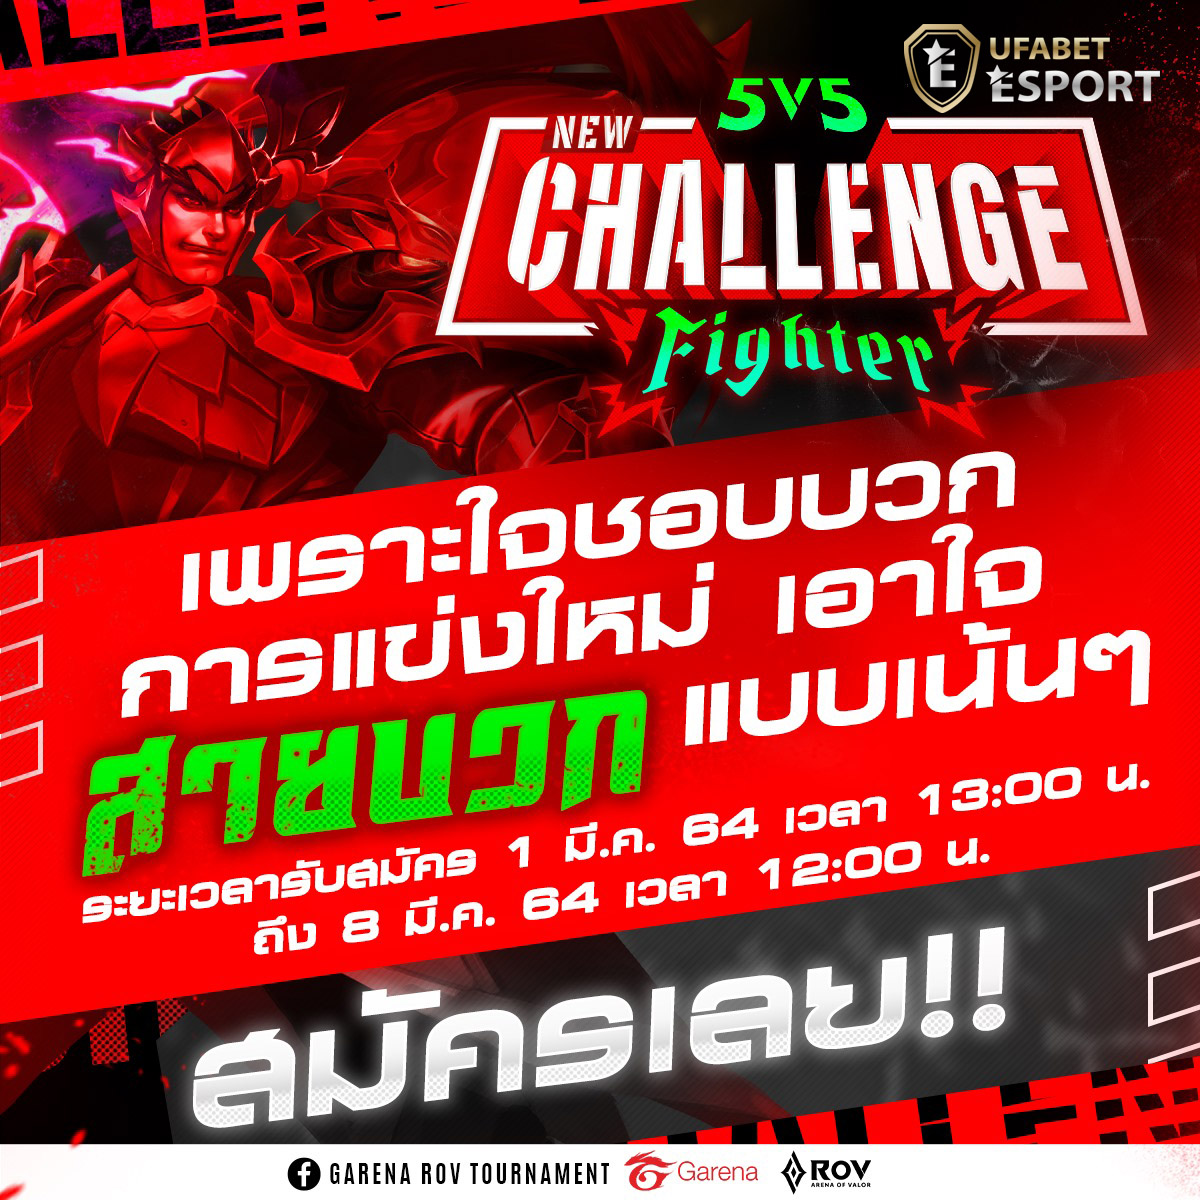 5v5 New Challenge